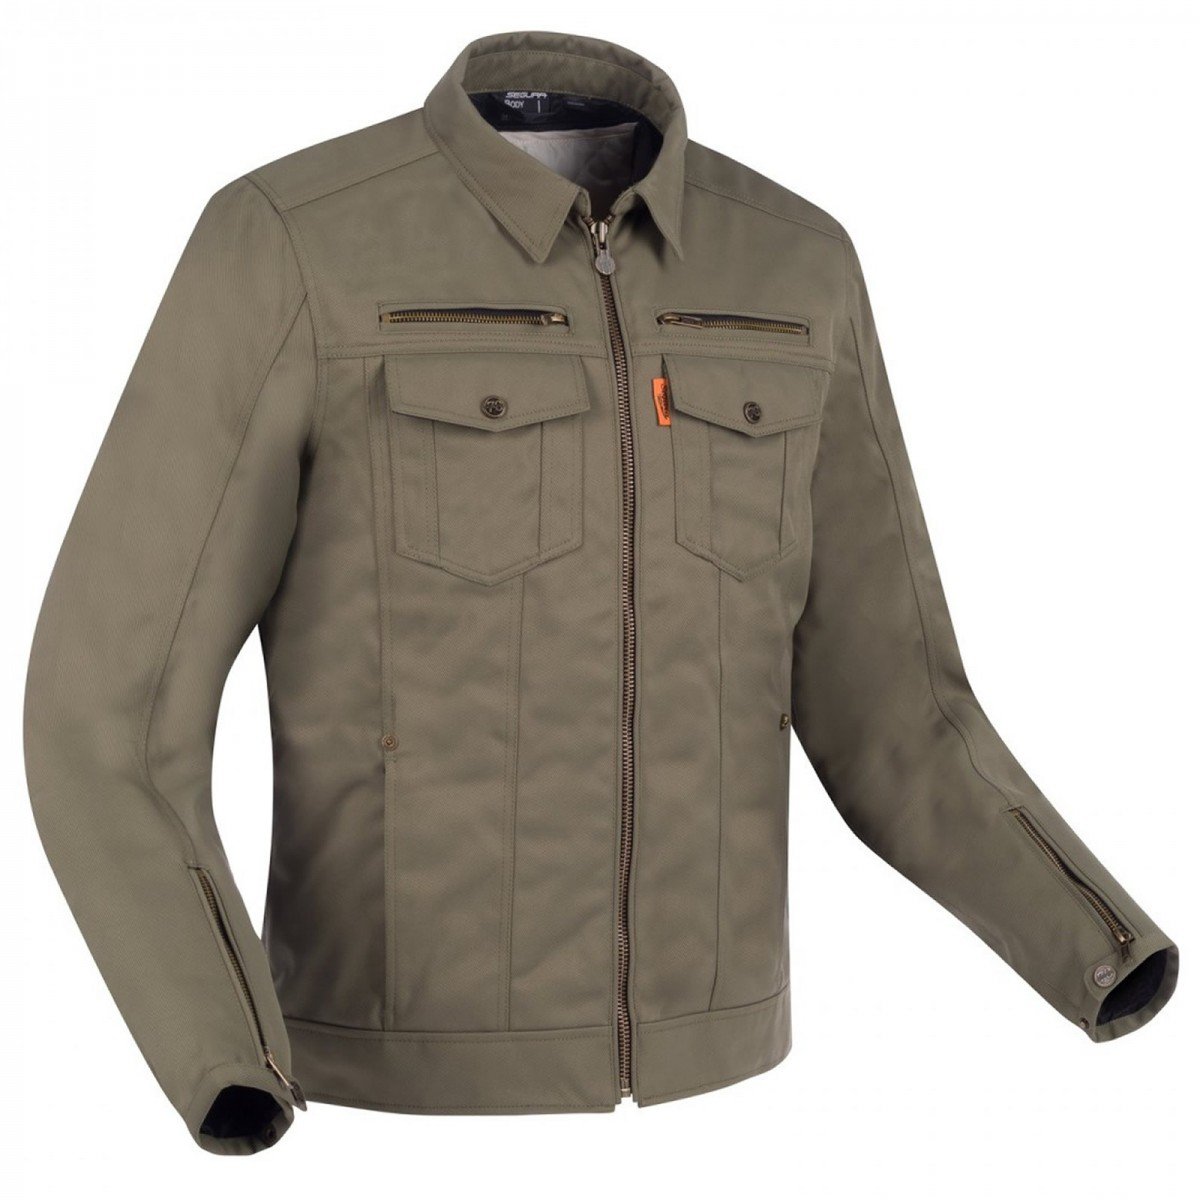 Image of Segura Patrol Jacket Khaki Size S ID 3660815163054